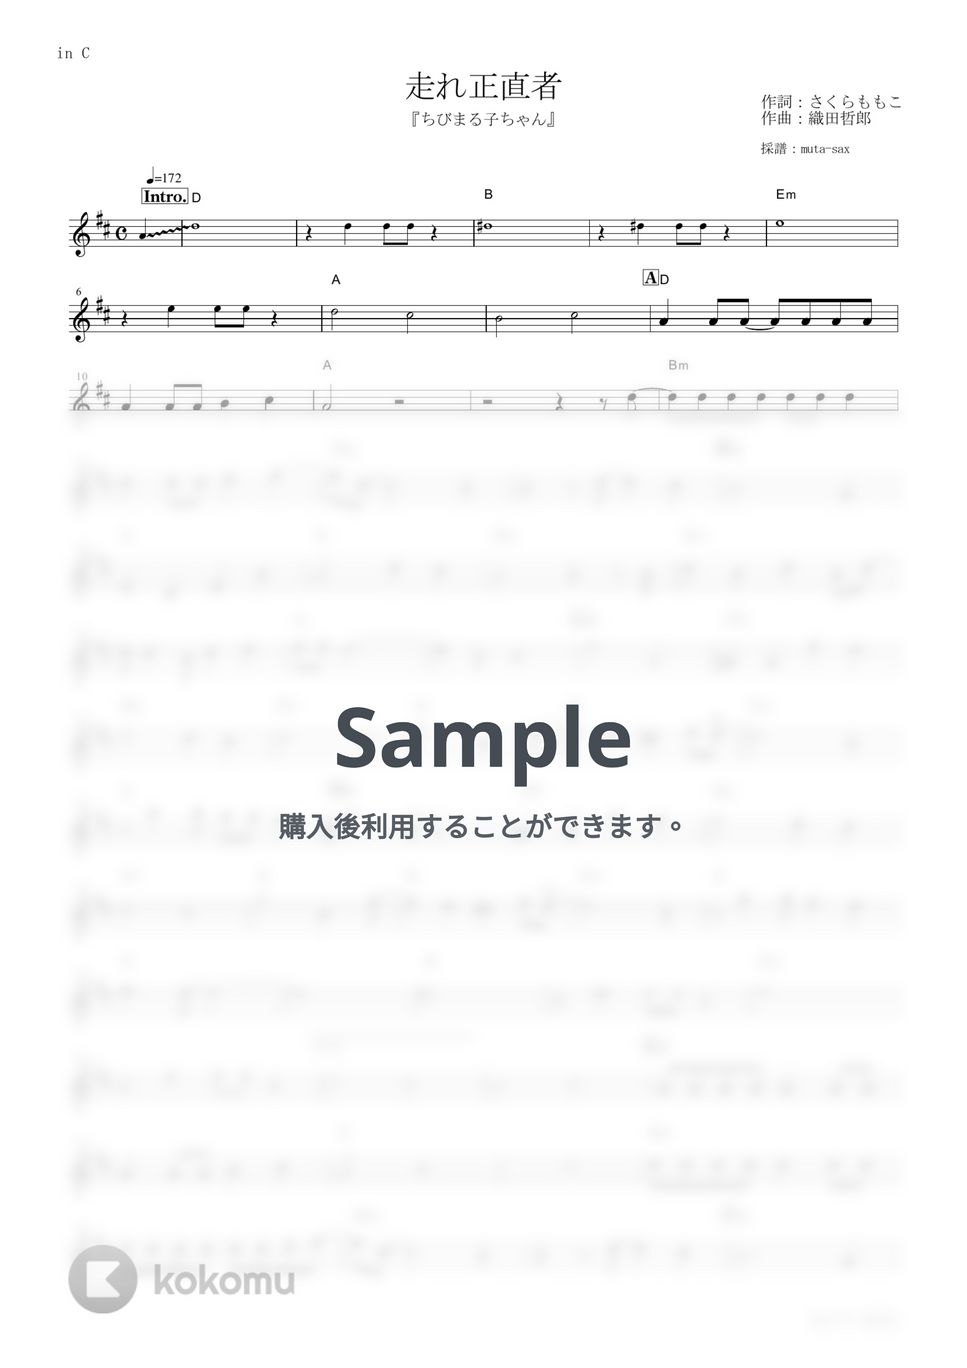 西城秀樹 - 走れ正直者 (『ちびまる子ちゃん』 / in C) 楽譜 by muta-sax